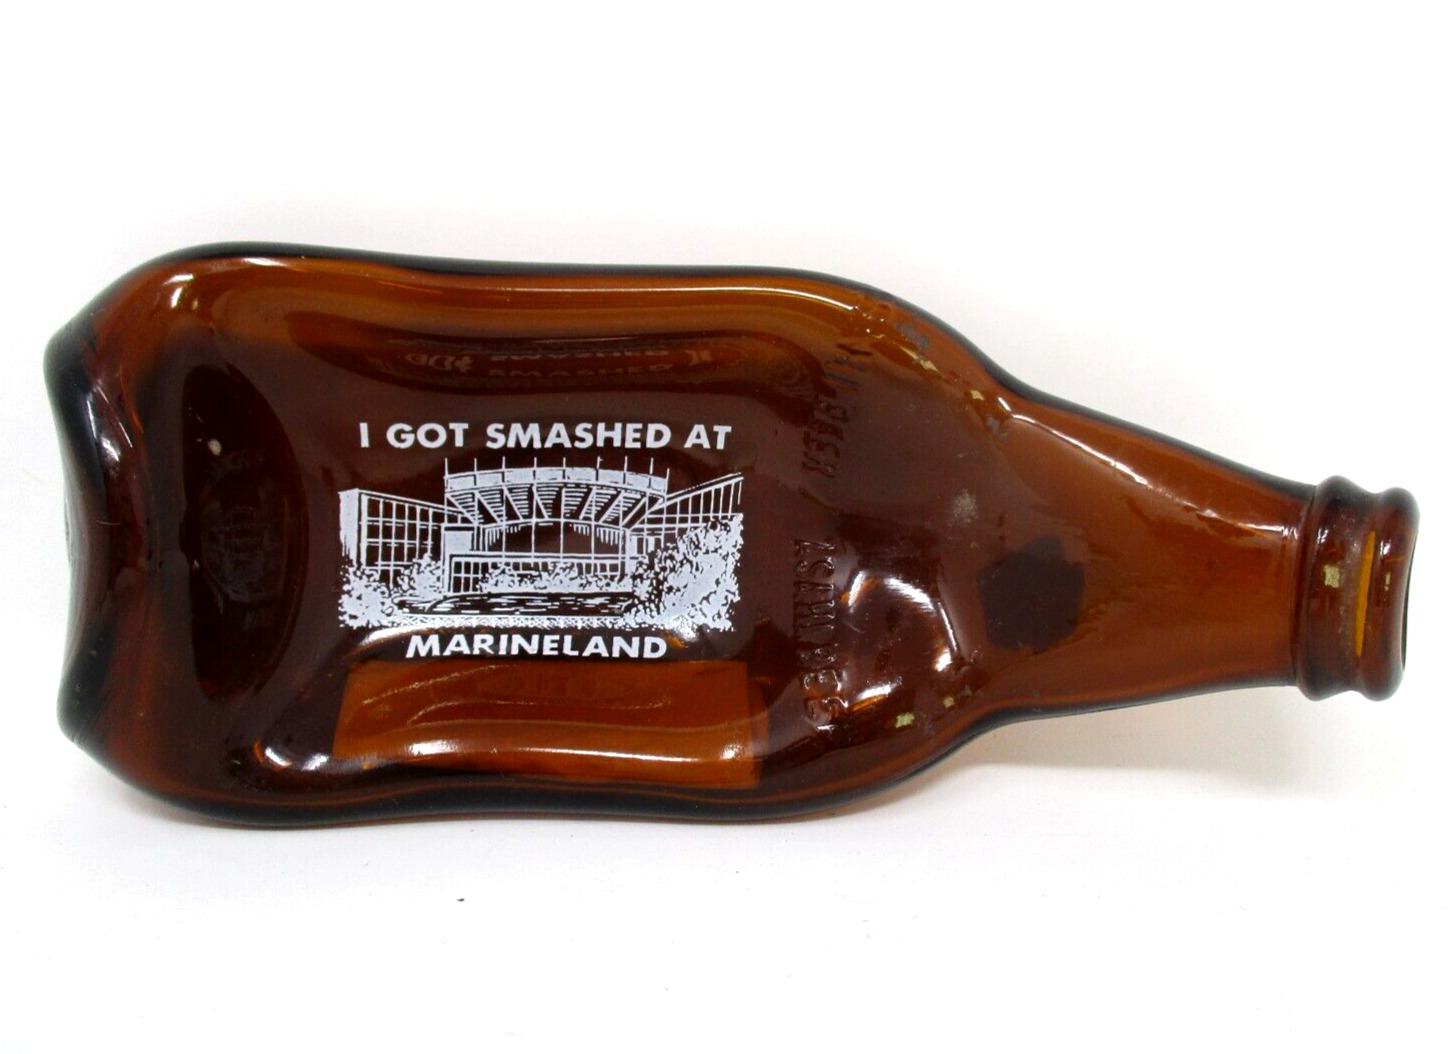 Vintage Marineland Souvenir Smashed Bottle Glass